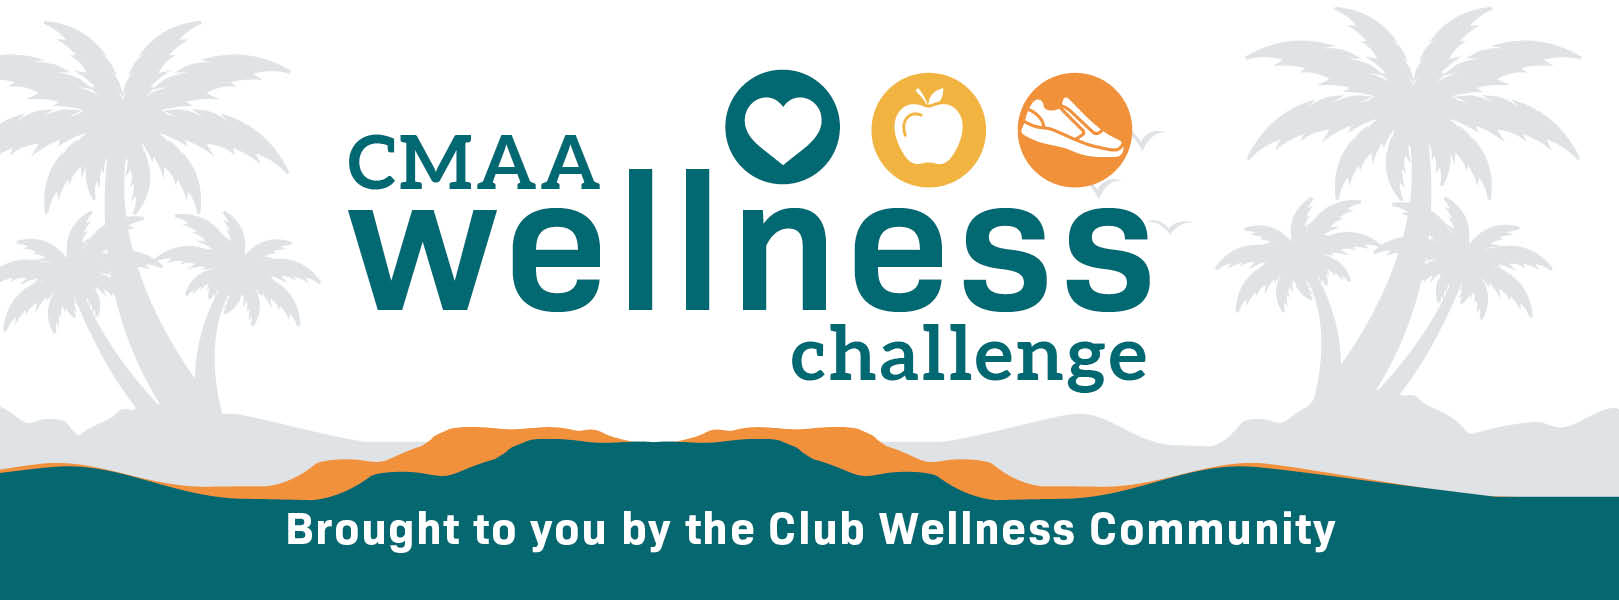 CMAA Wellness Challenge